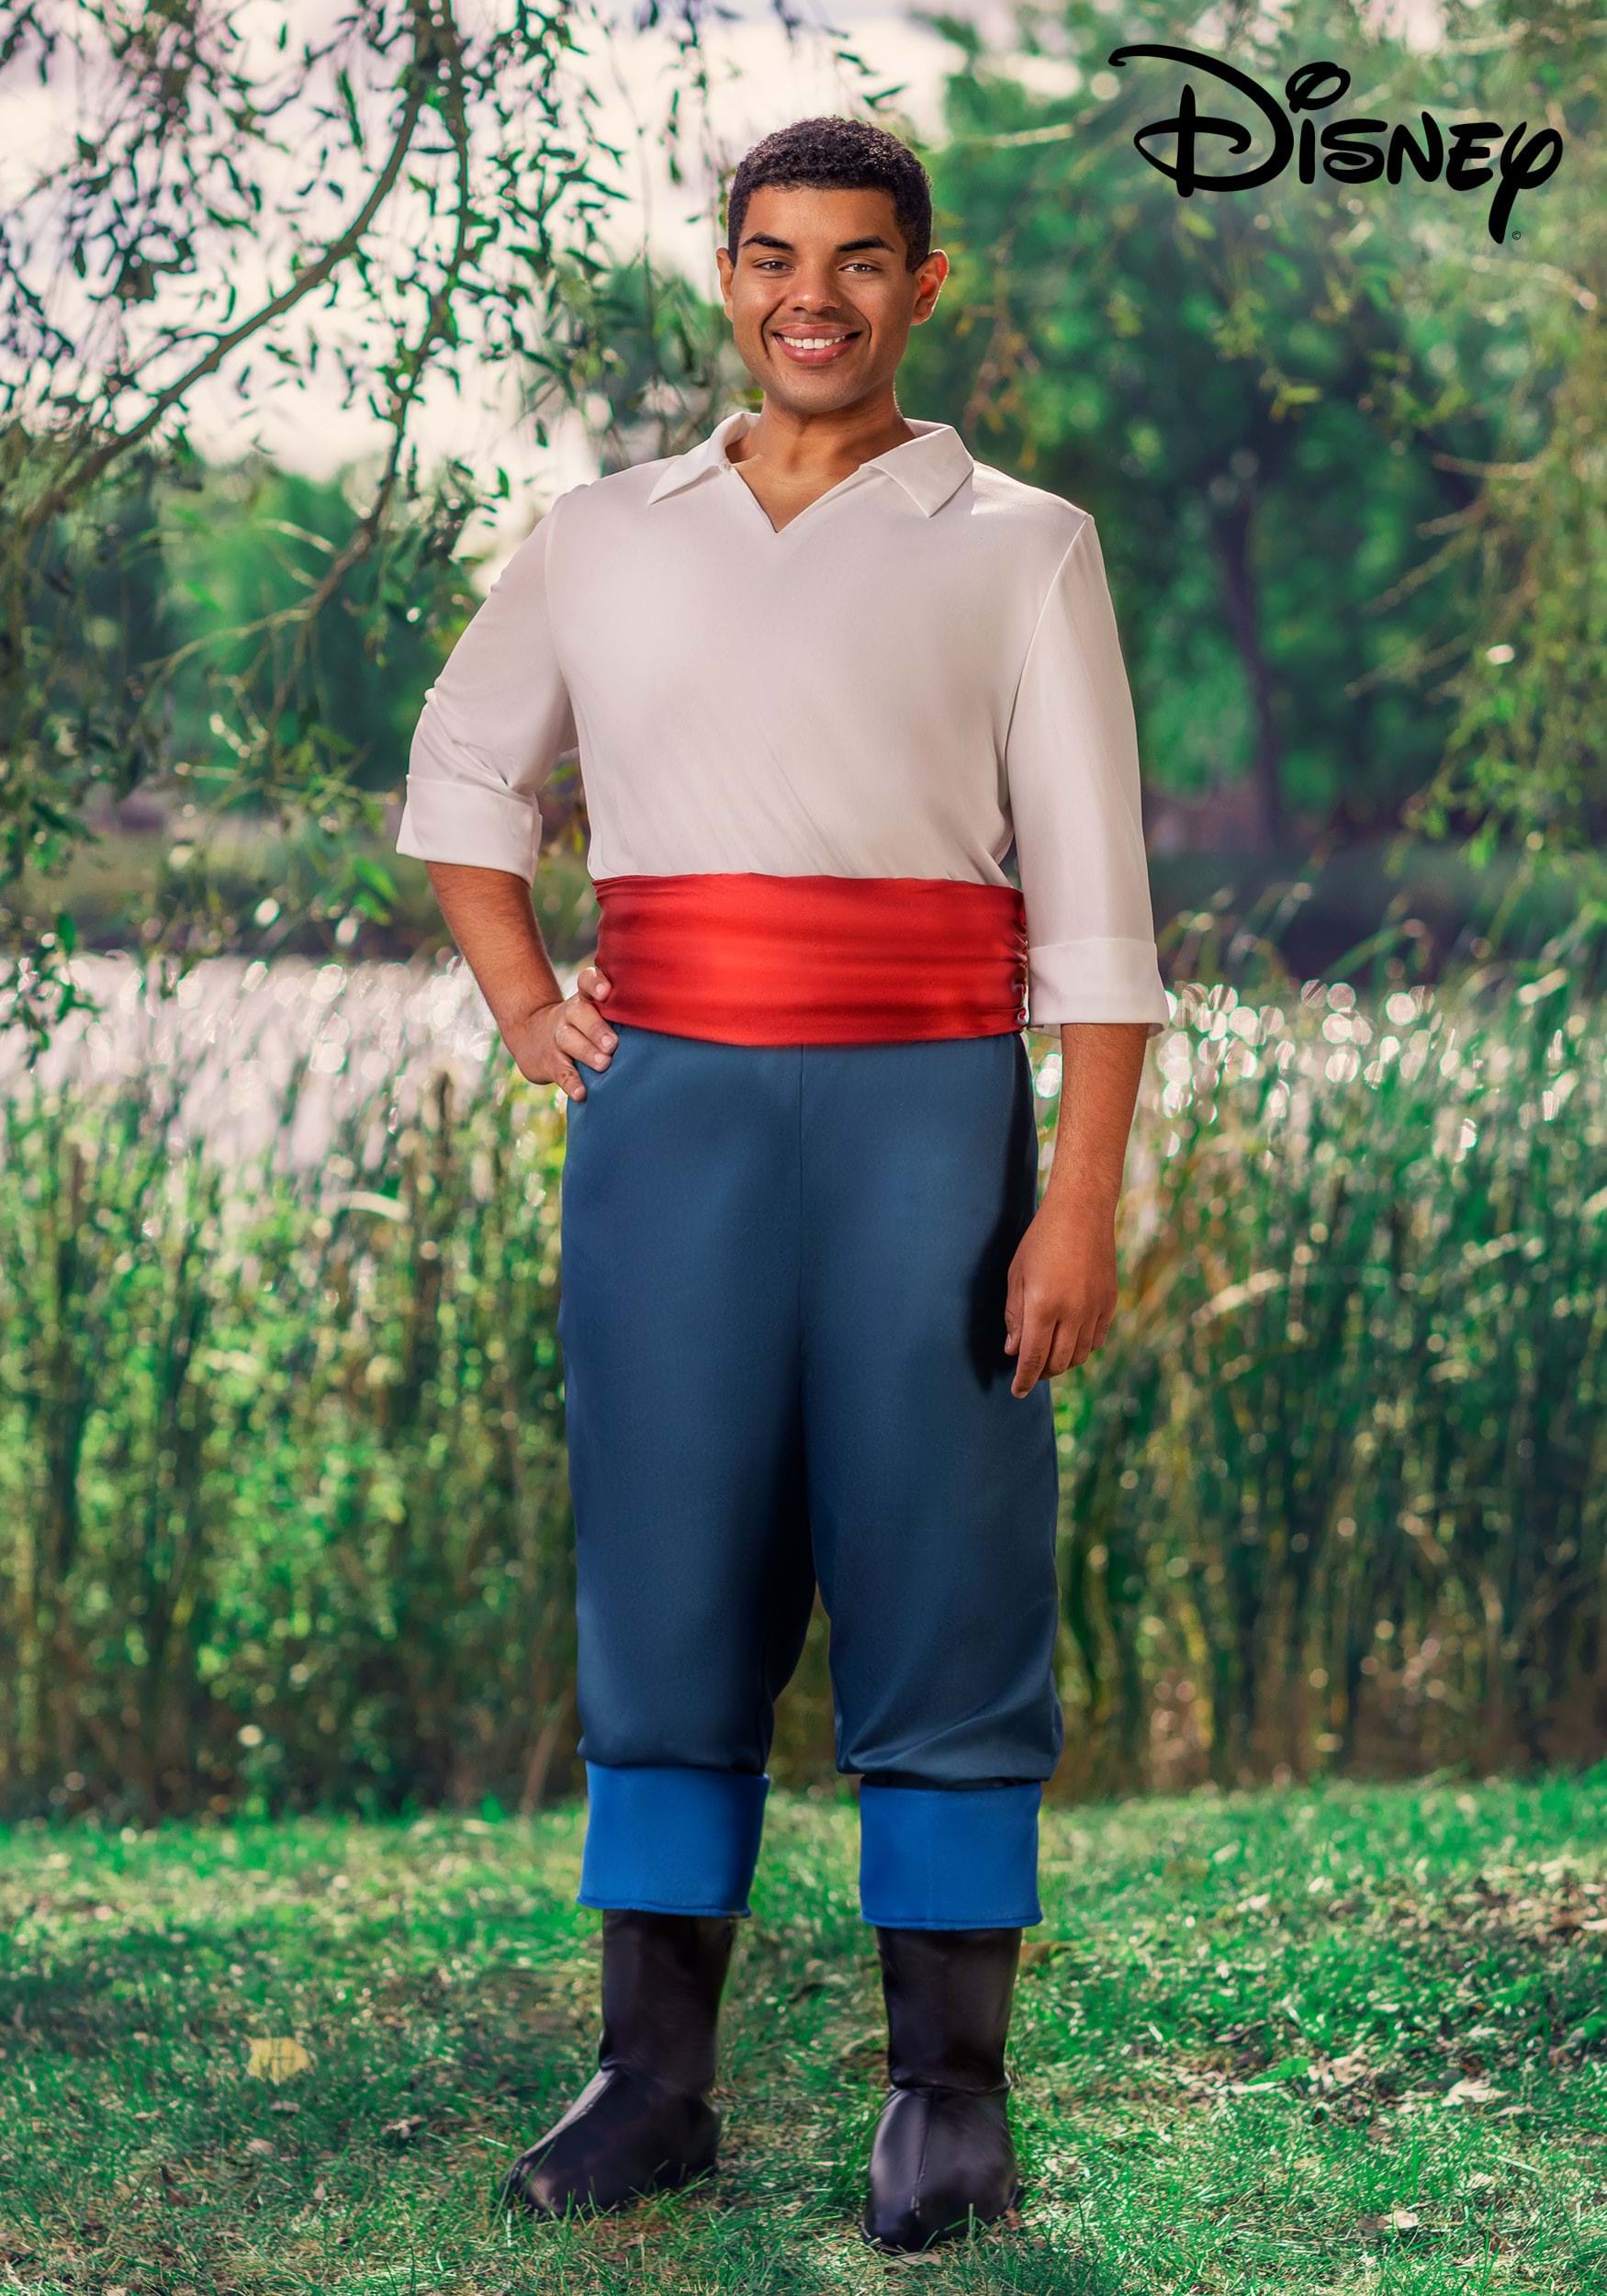 Disfraz de Disney Prince Eric para adultos Multicolor